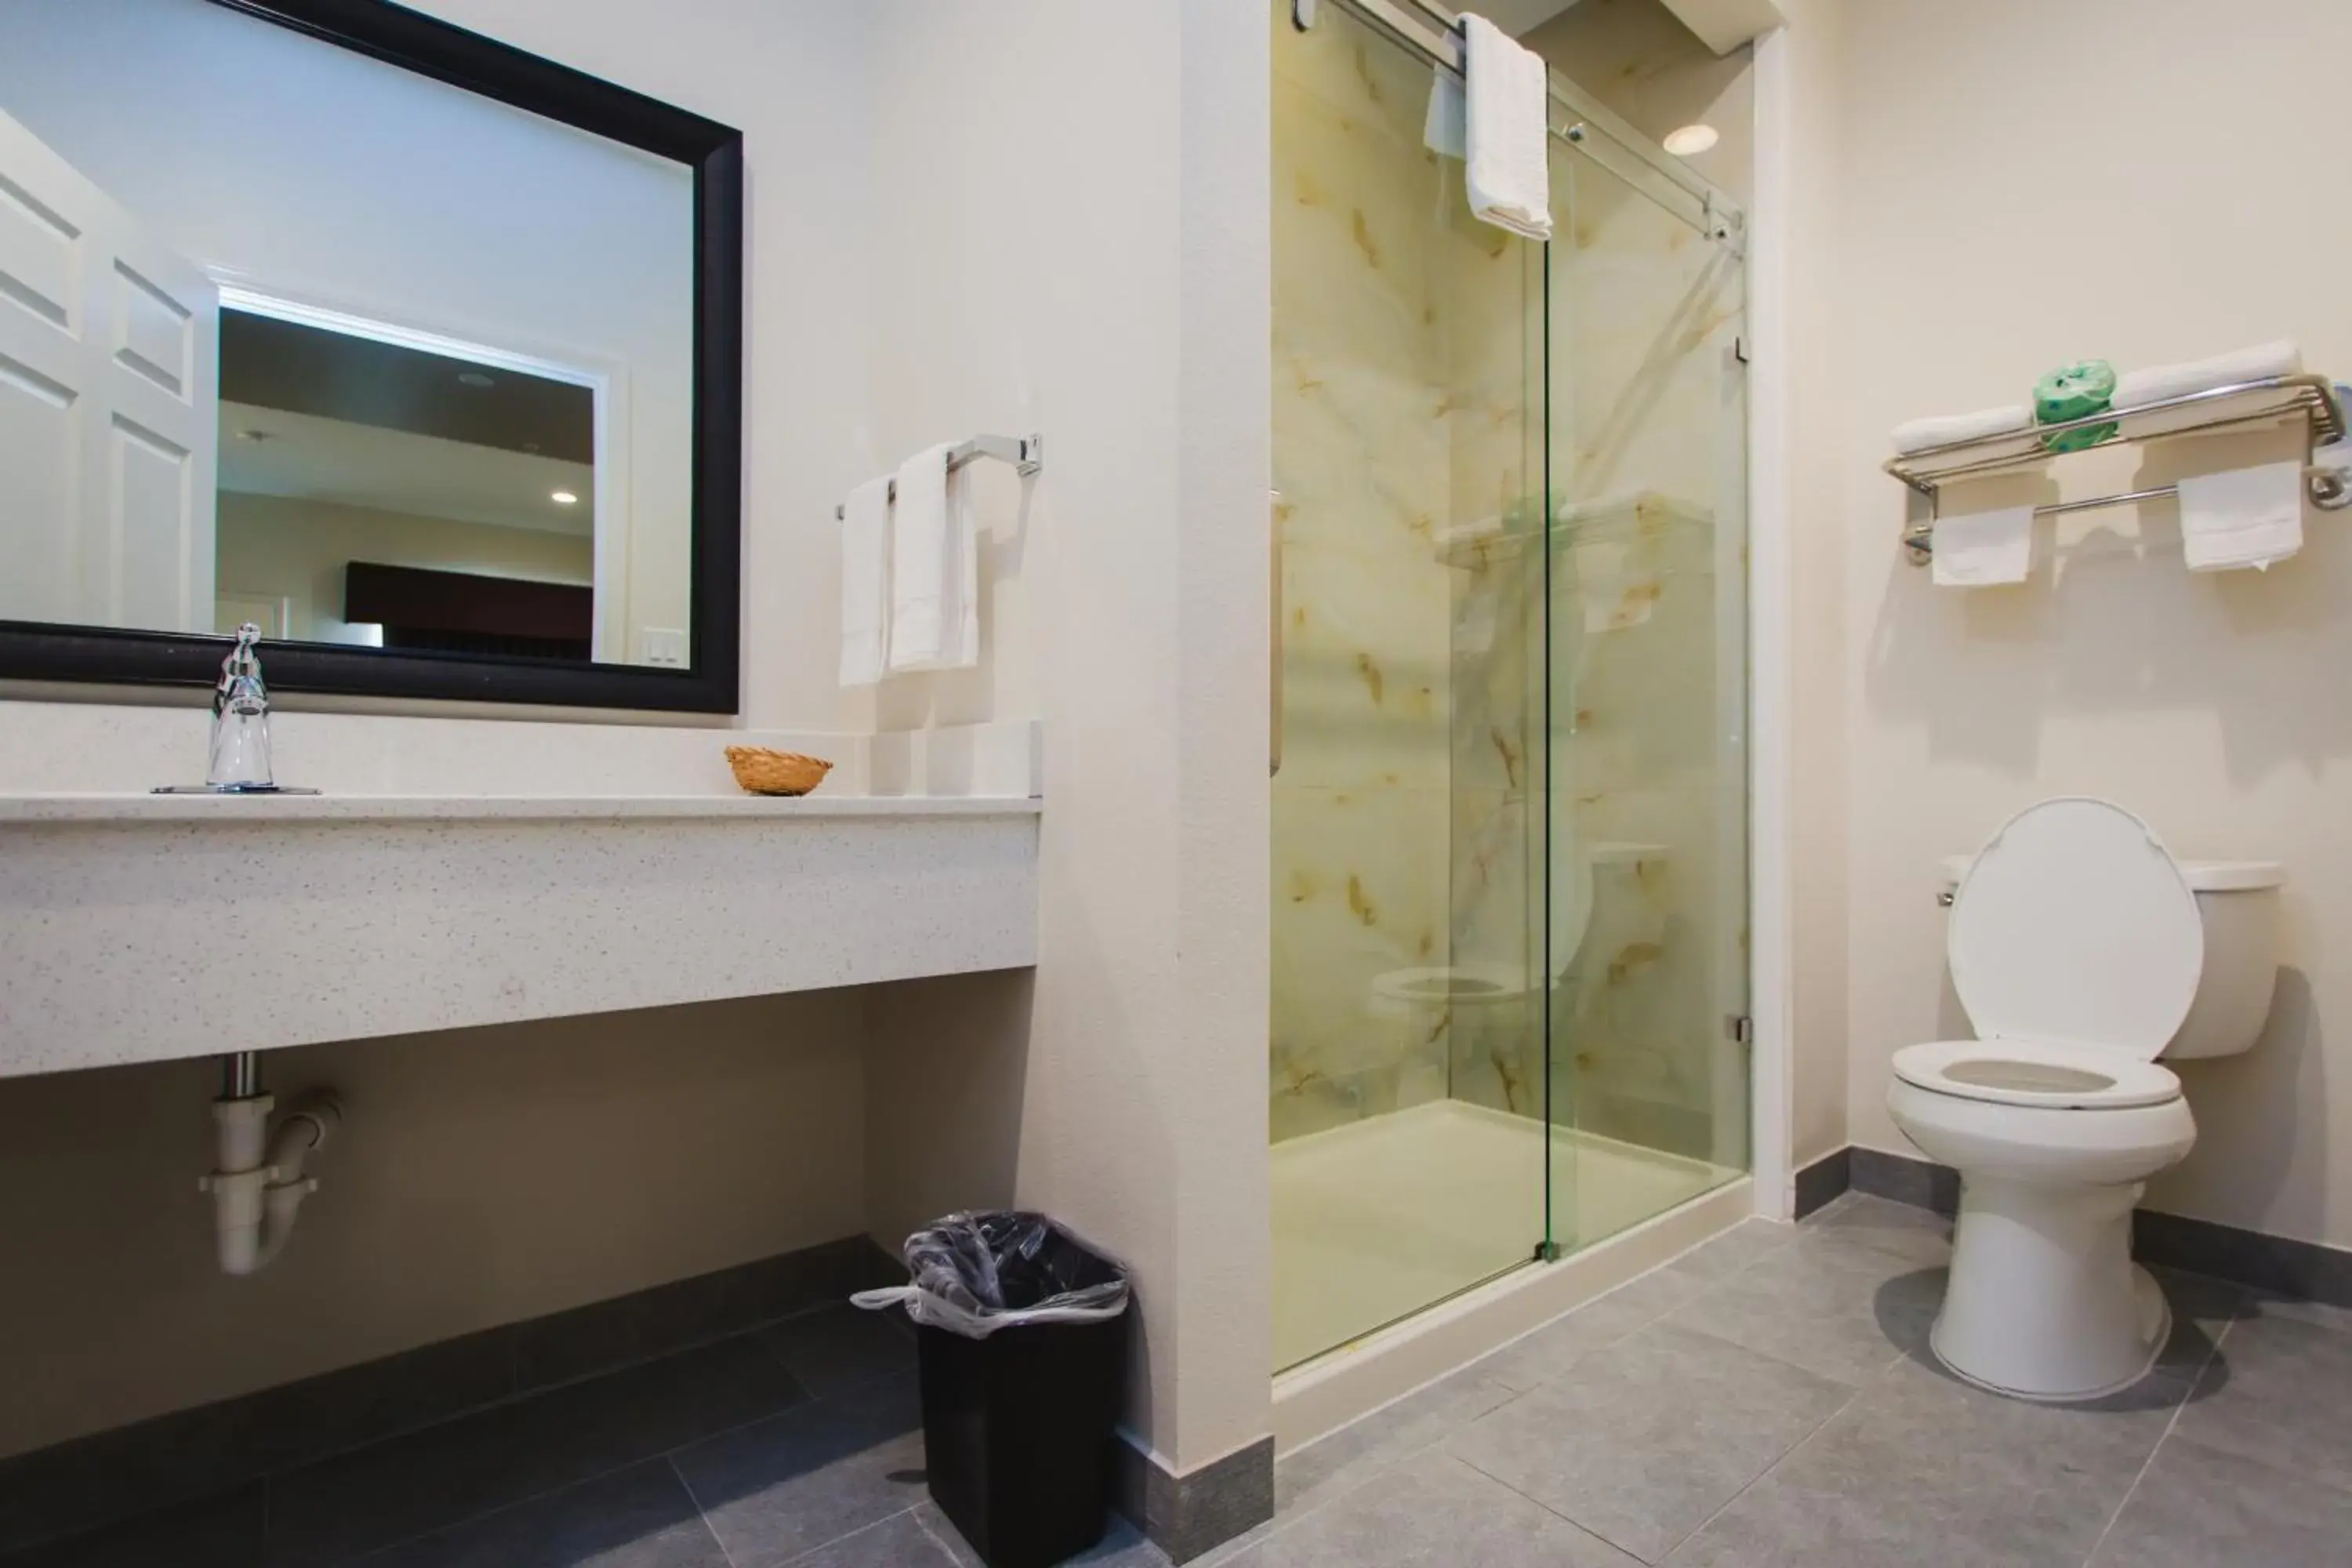 Bathroom in Scottish Inn & Suites - Atascocita